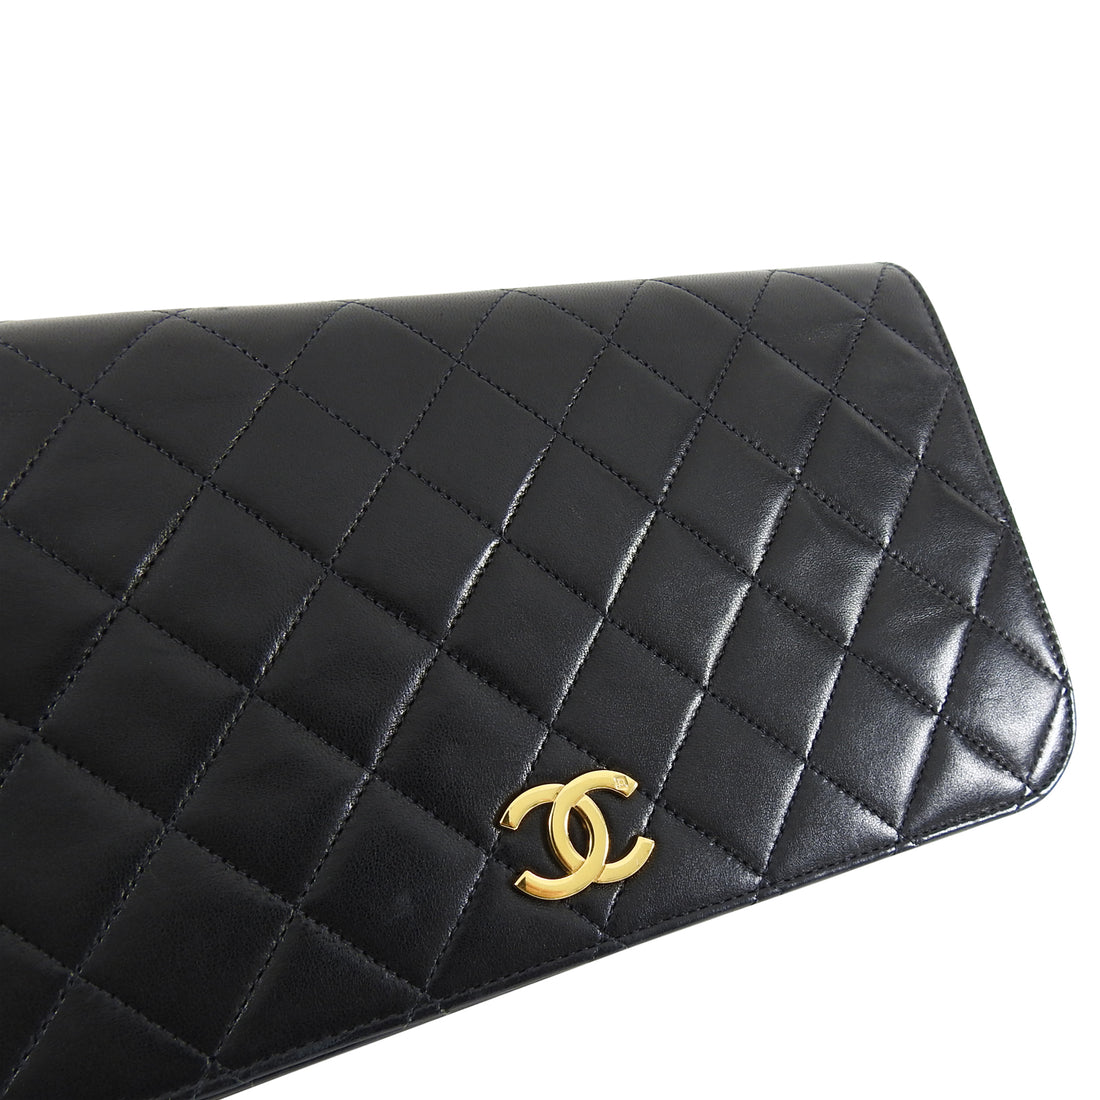 Chanel Vintage 1996 Black Quilt Chain Strap Shoulder Bag